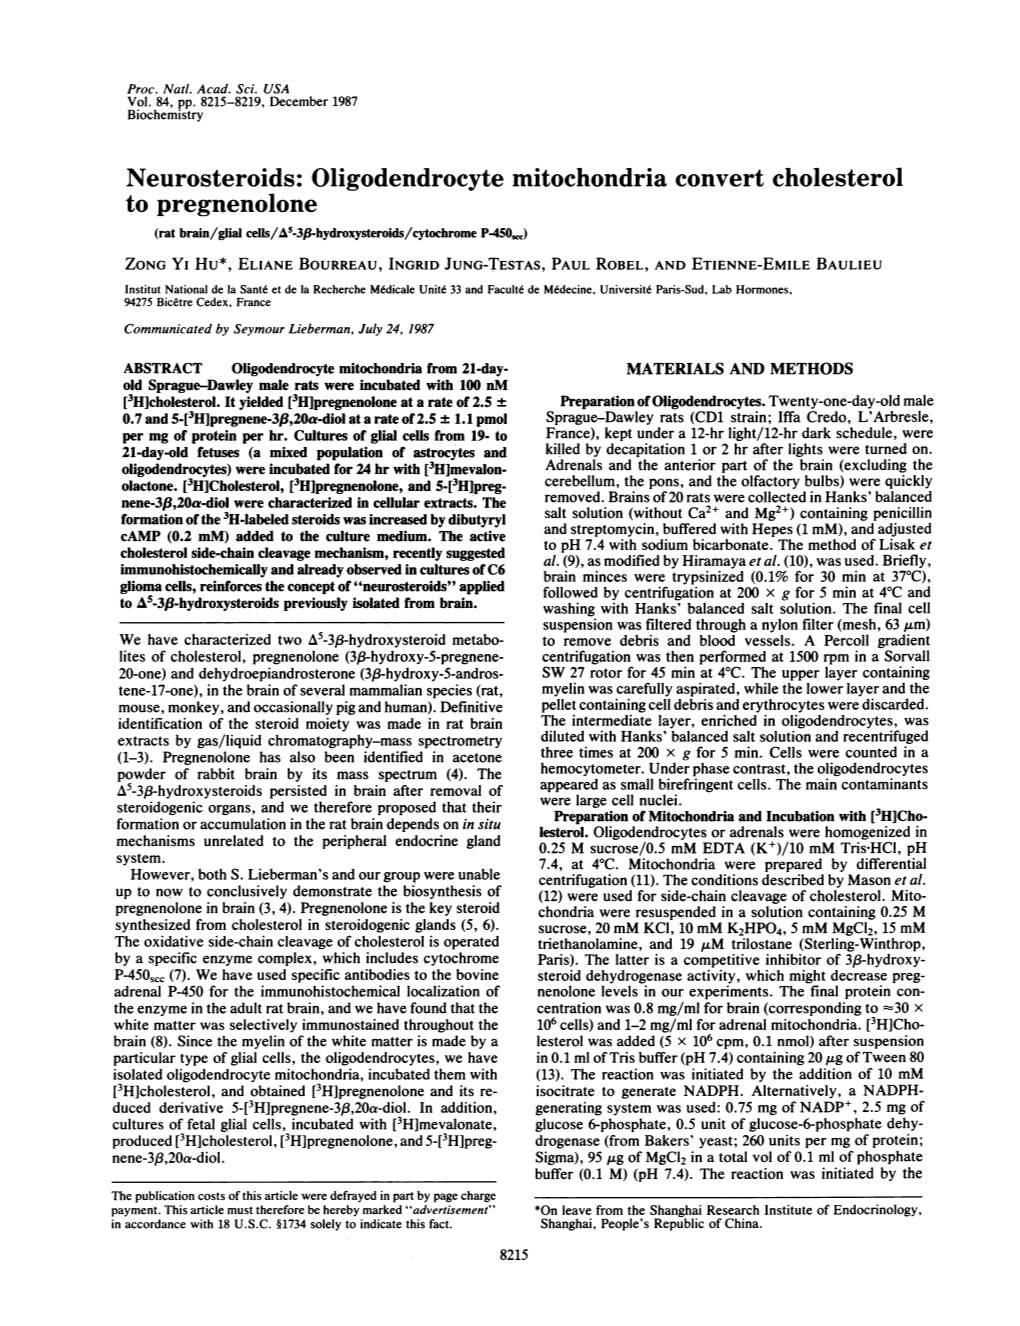 Oligodendrocyte Mitochondria Convert Cholesterol to Pregnenolone